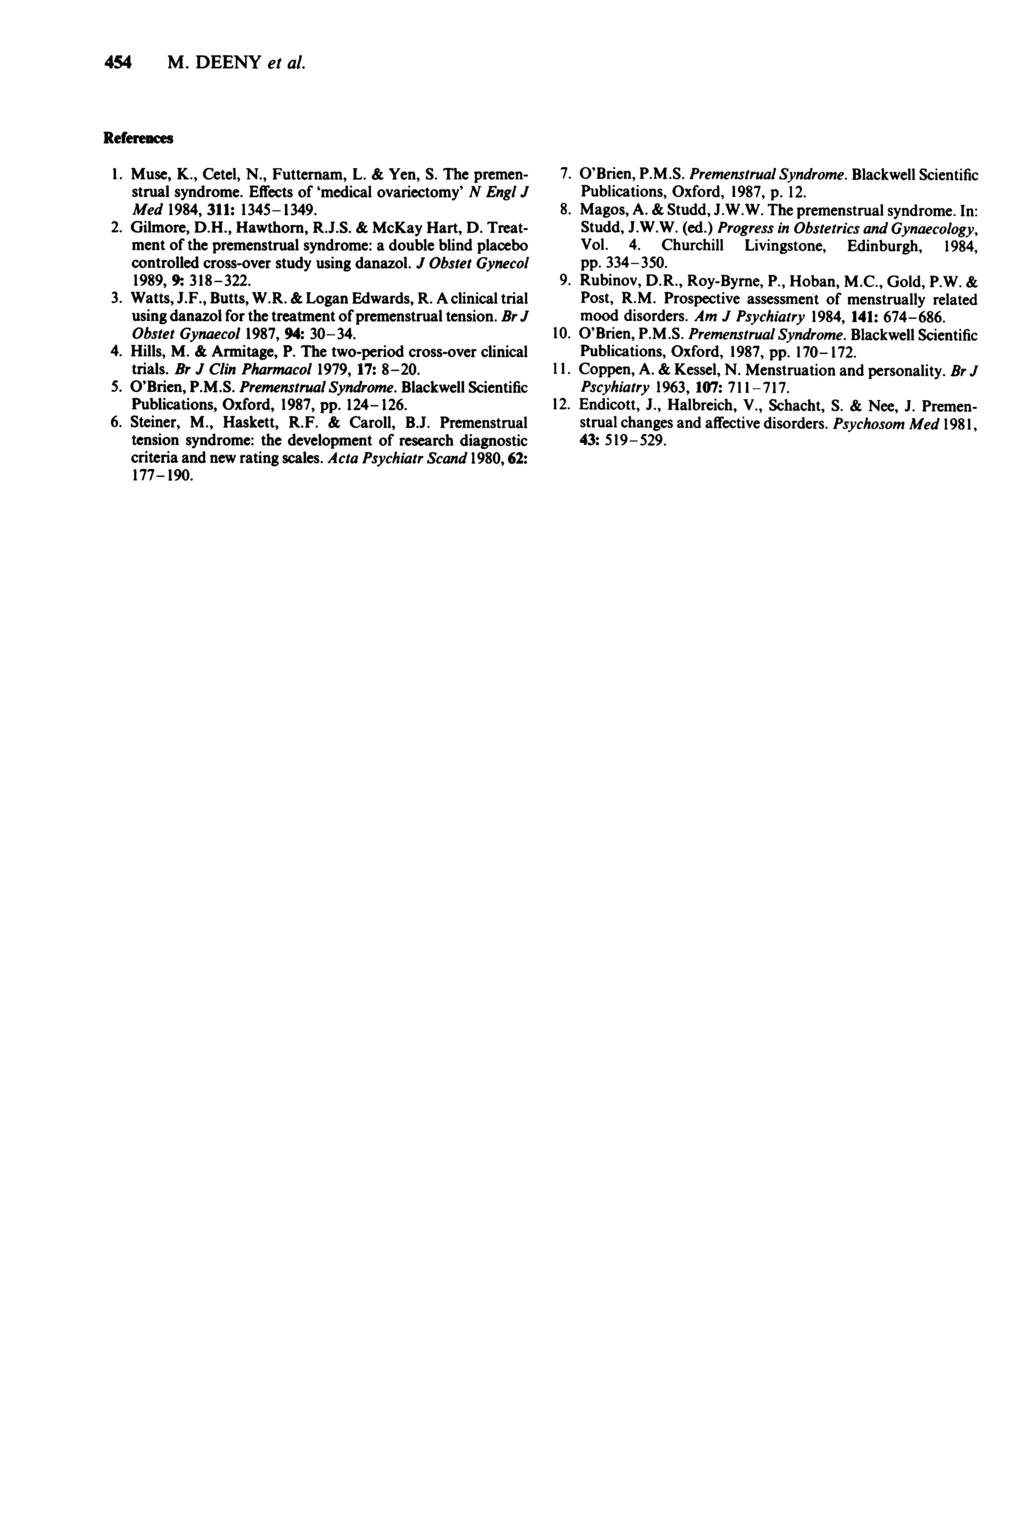 454 M. DEENY et al. References 1. Muse, K., Cetel, N., Futternam, L. & Yen, S. The premenstrual syndrome. Effects of 'medical ovariectomy' N Engl J Med 1984, 311: 1345-1349. 2. Gilmore, D.H.